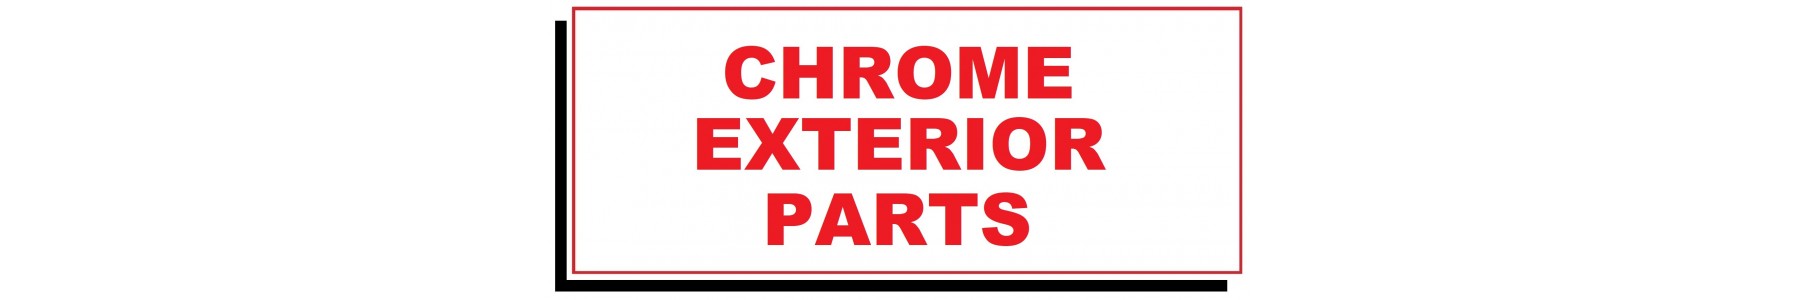 CHROME EXTERIOR PARTS